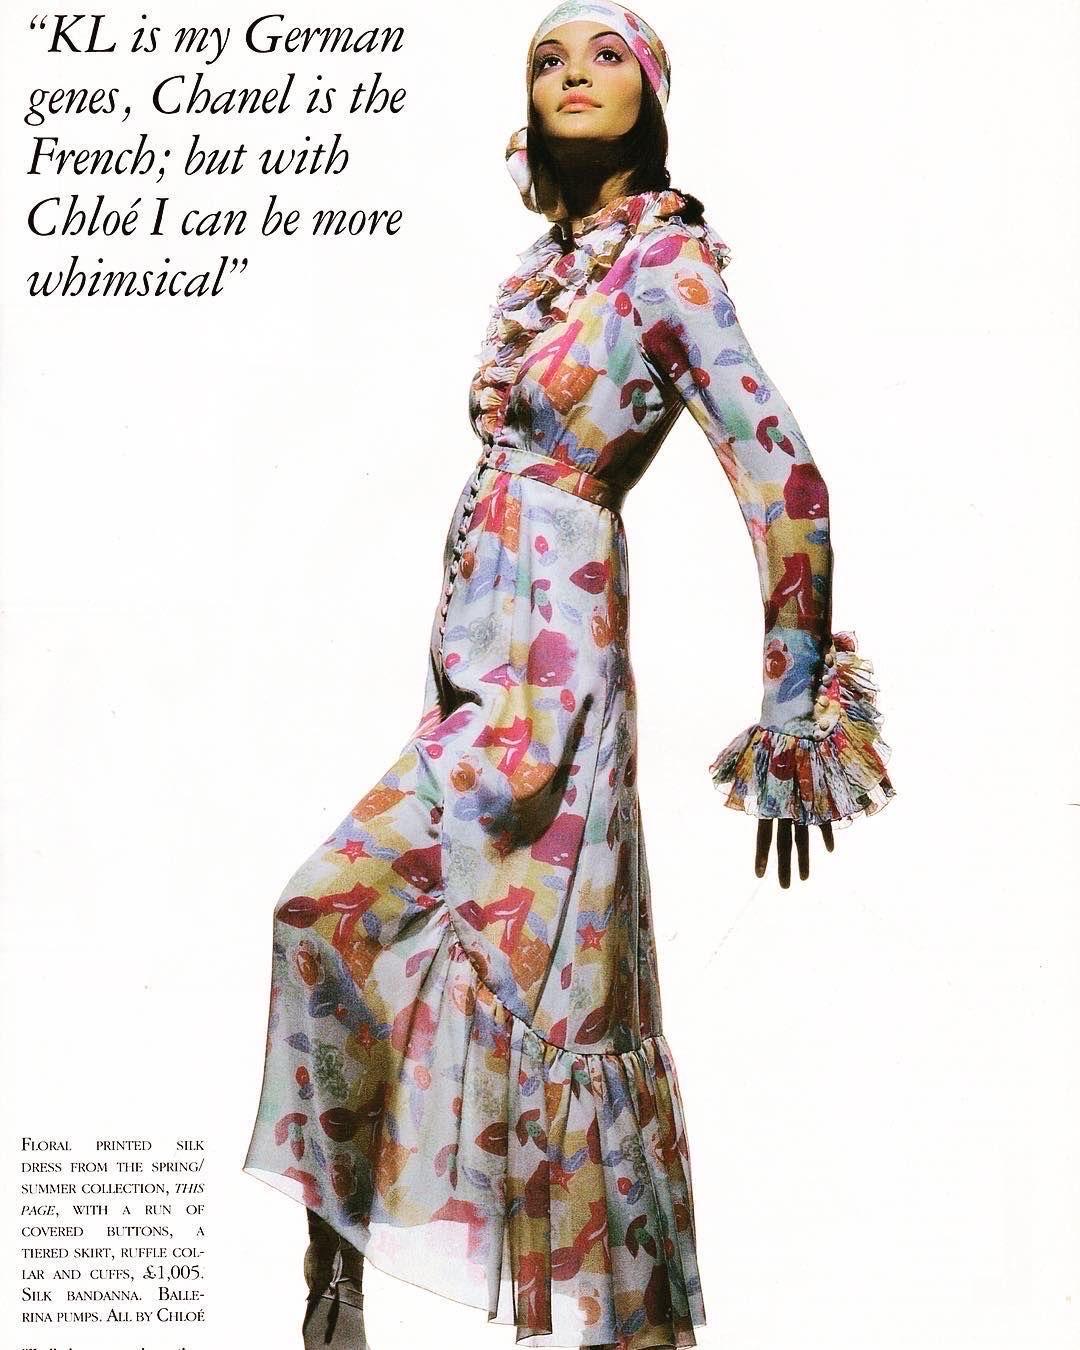 Karl Lagerfeld est une sorte de légende de la mode. Après avoir travaillé pour une panoplie de maisons de couture notoires, Lagerfeld a dessiné pour Chloé à la fin des années 60-80 et plus tard dans les années 90. Son travail chez Chloé résume la